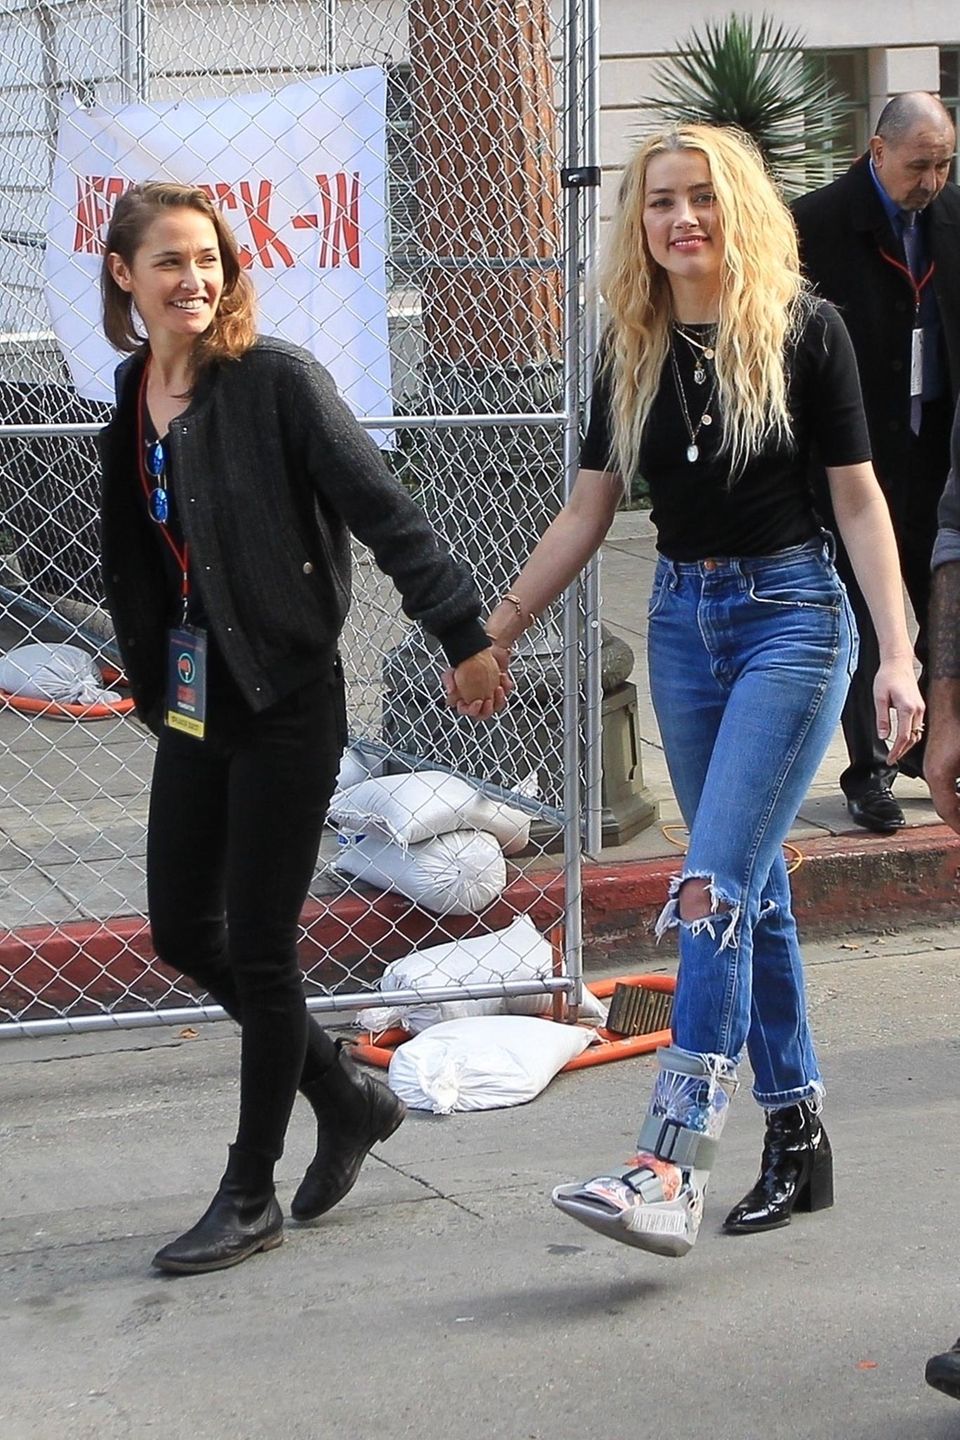 20. Januar 2020  Gut gelaunt und frisch verliebt nimmt Amber Heard Händchen haltend mit ihrer neuen Freundin Bianca Butti beim Women's March in Los Angeles teil.   